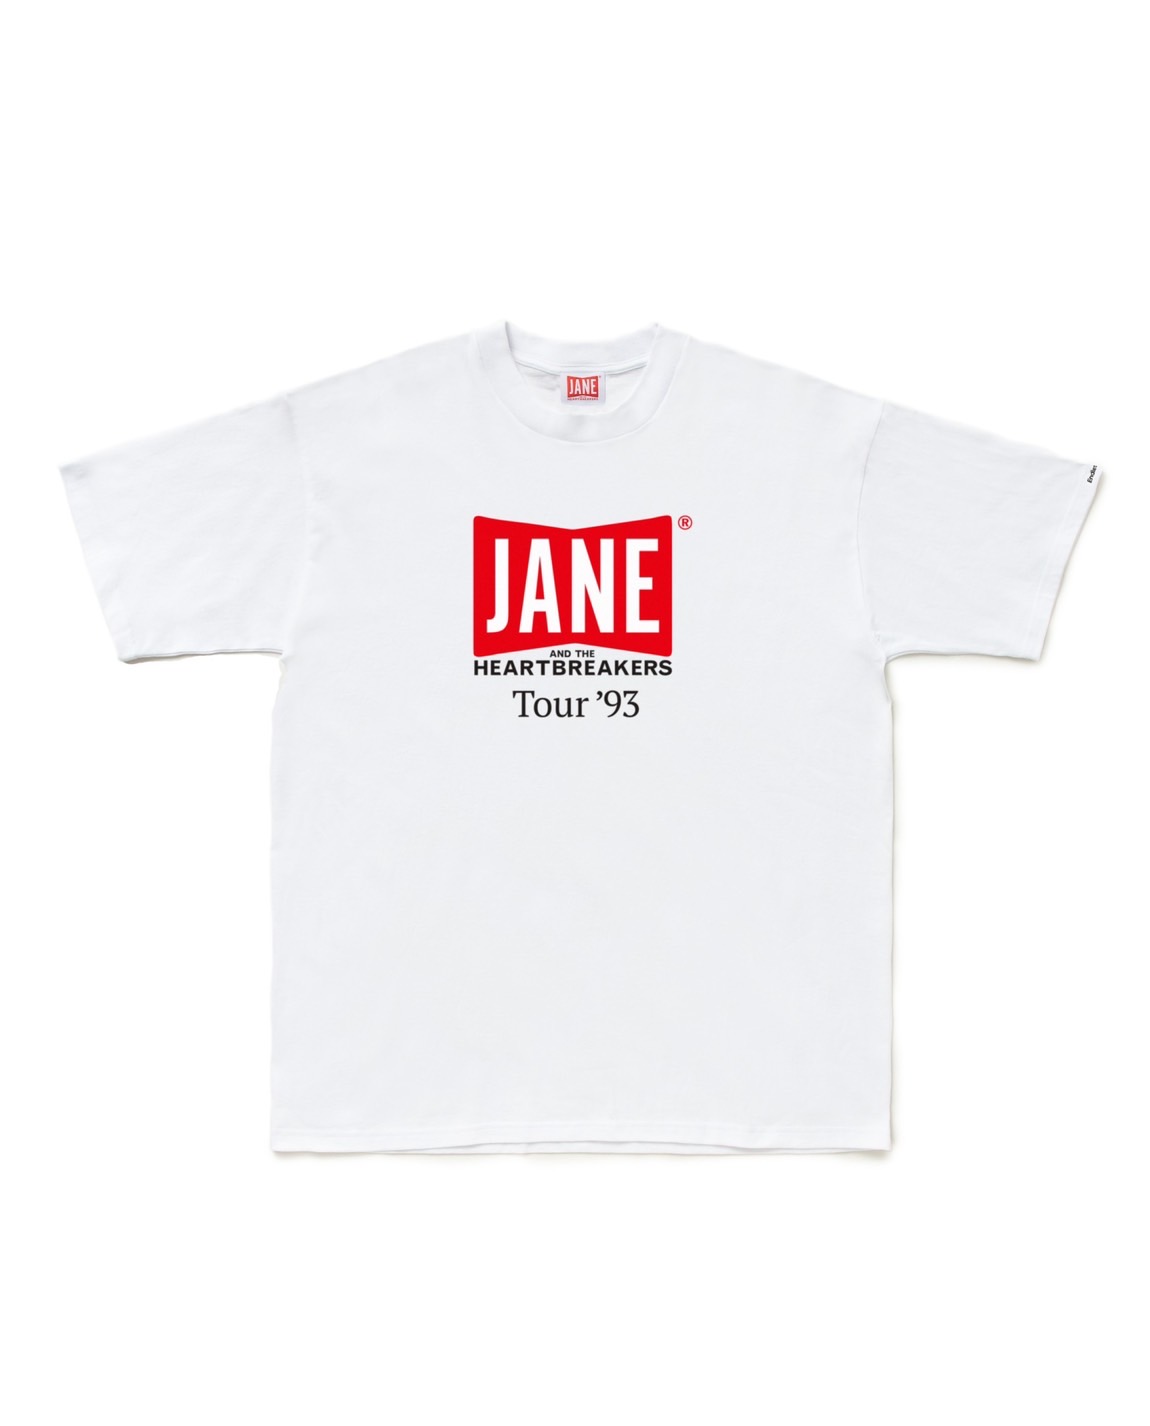 【木村拓哉着用】JANE & THE HEARTBREAKERS Tシャツ L